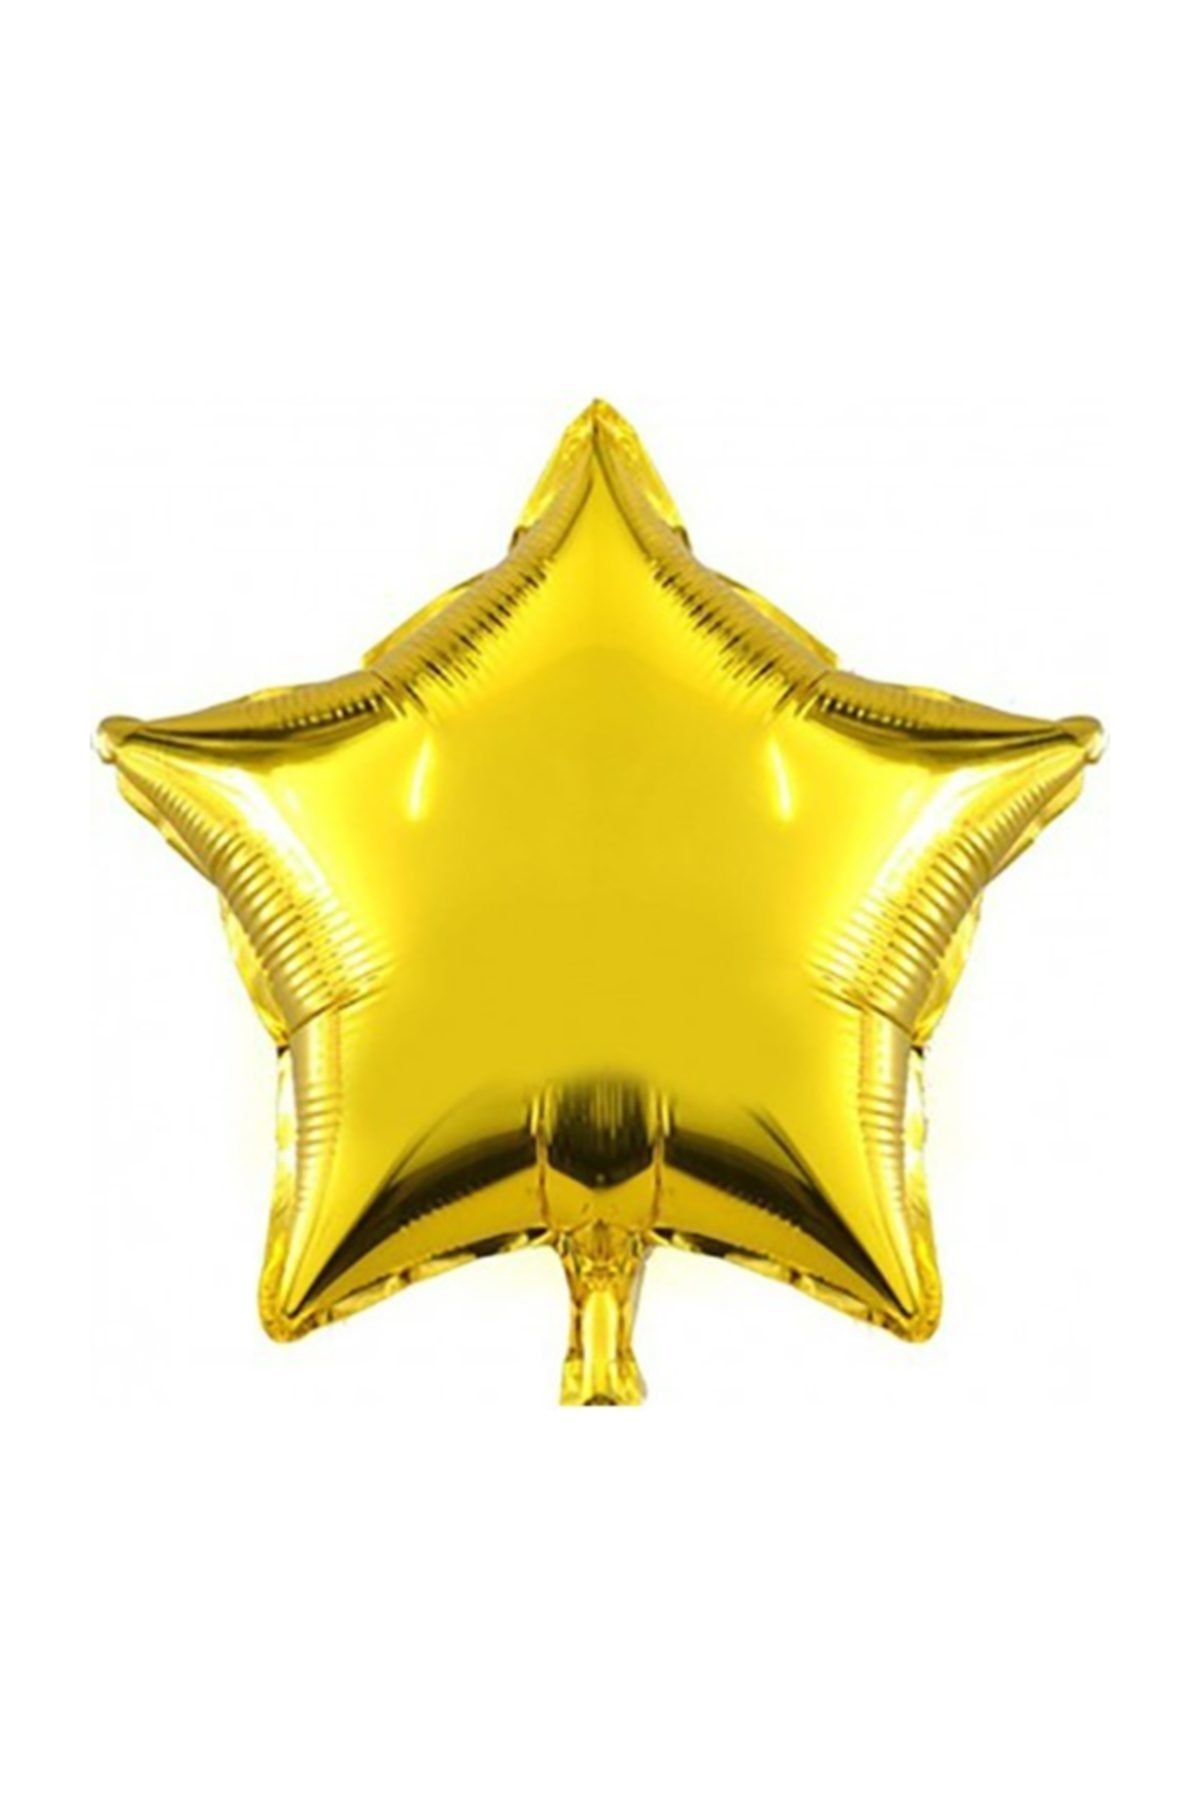 Cansüs Gold Yıldız Folyo Balon 45cm